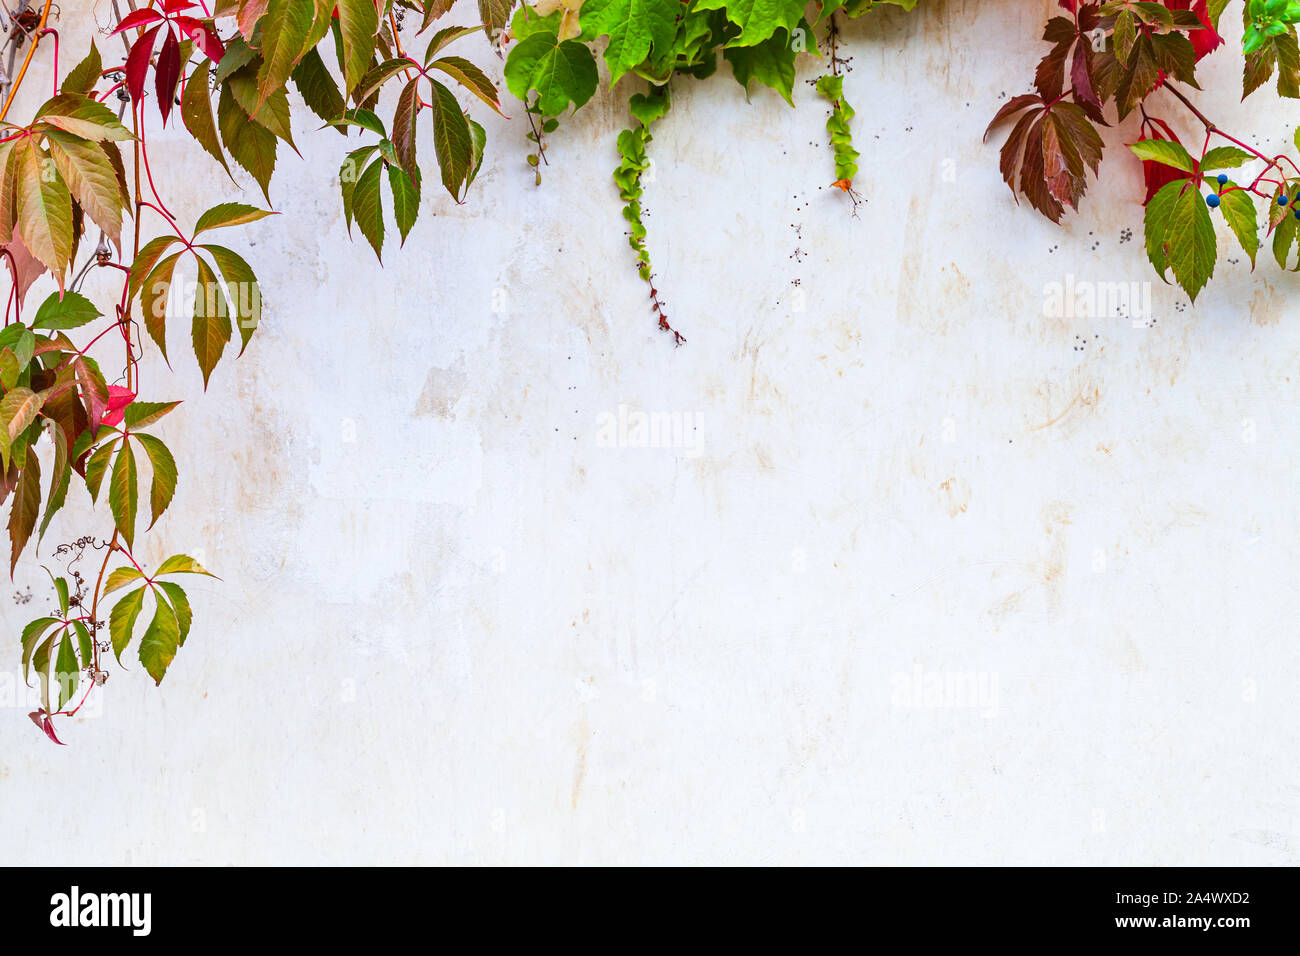 Bianco parete giardino sfondo con pianta rampicante su di esso e copy-space area vuota Foto Stock